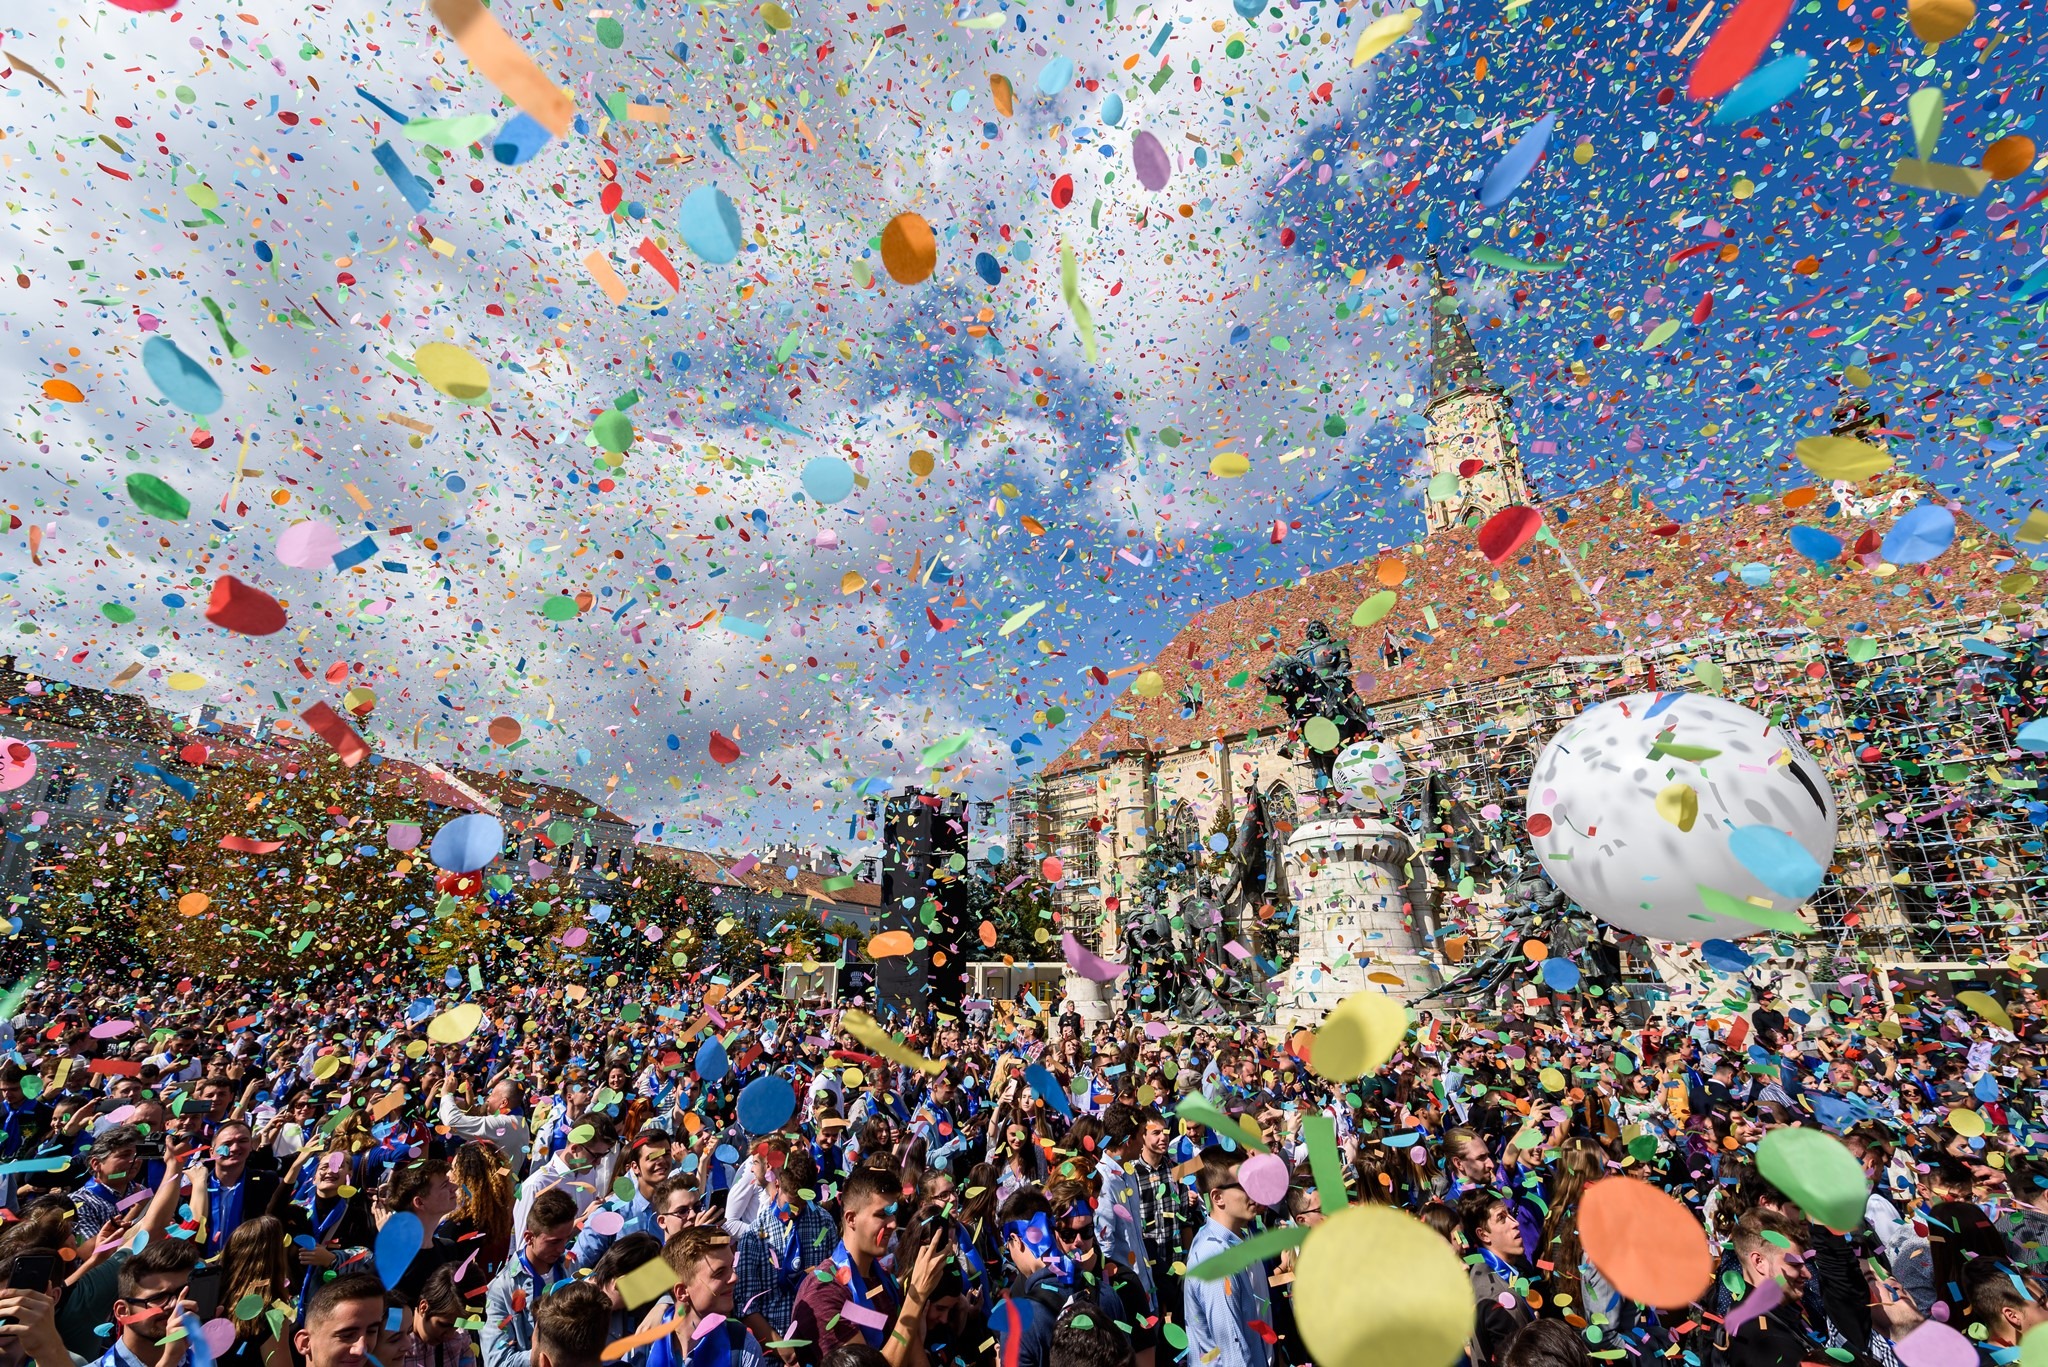 Apel de idei și propuneri de proiecte pentru ediția aniversară a Zilelor Clujului